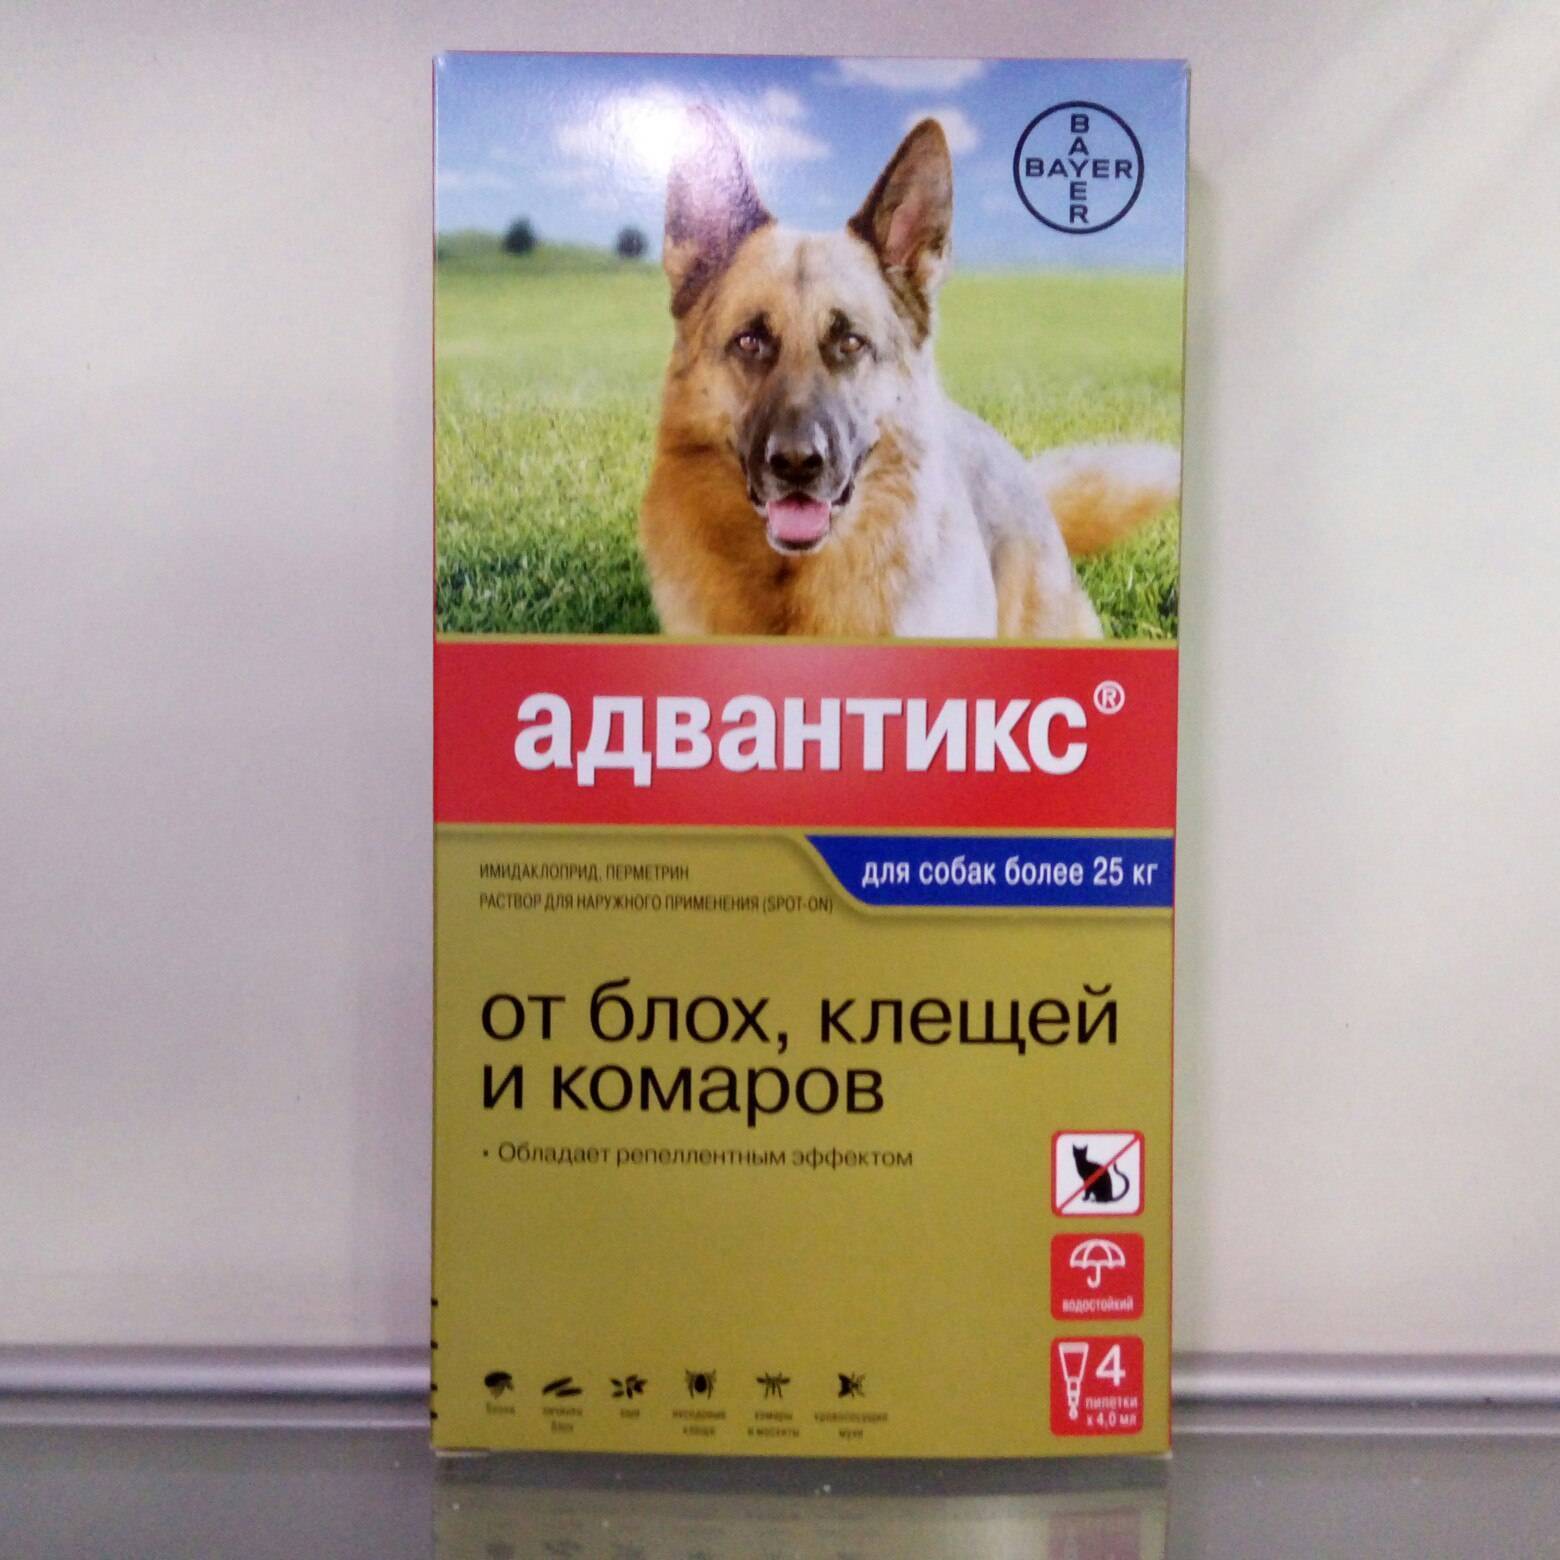 Адвантикс для собак - инструкция по применению, отзывы, цена | petguru